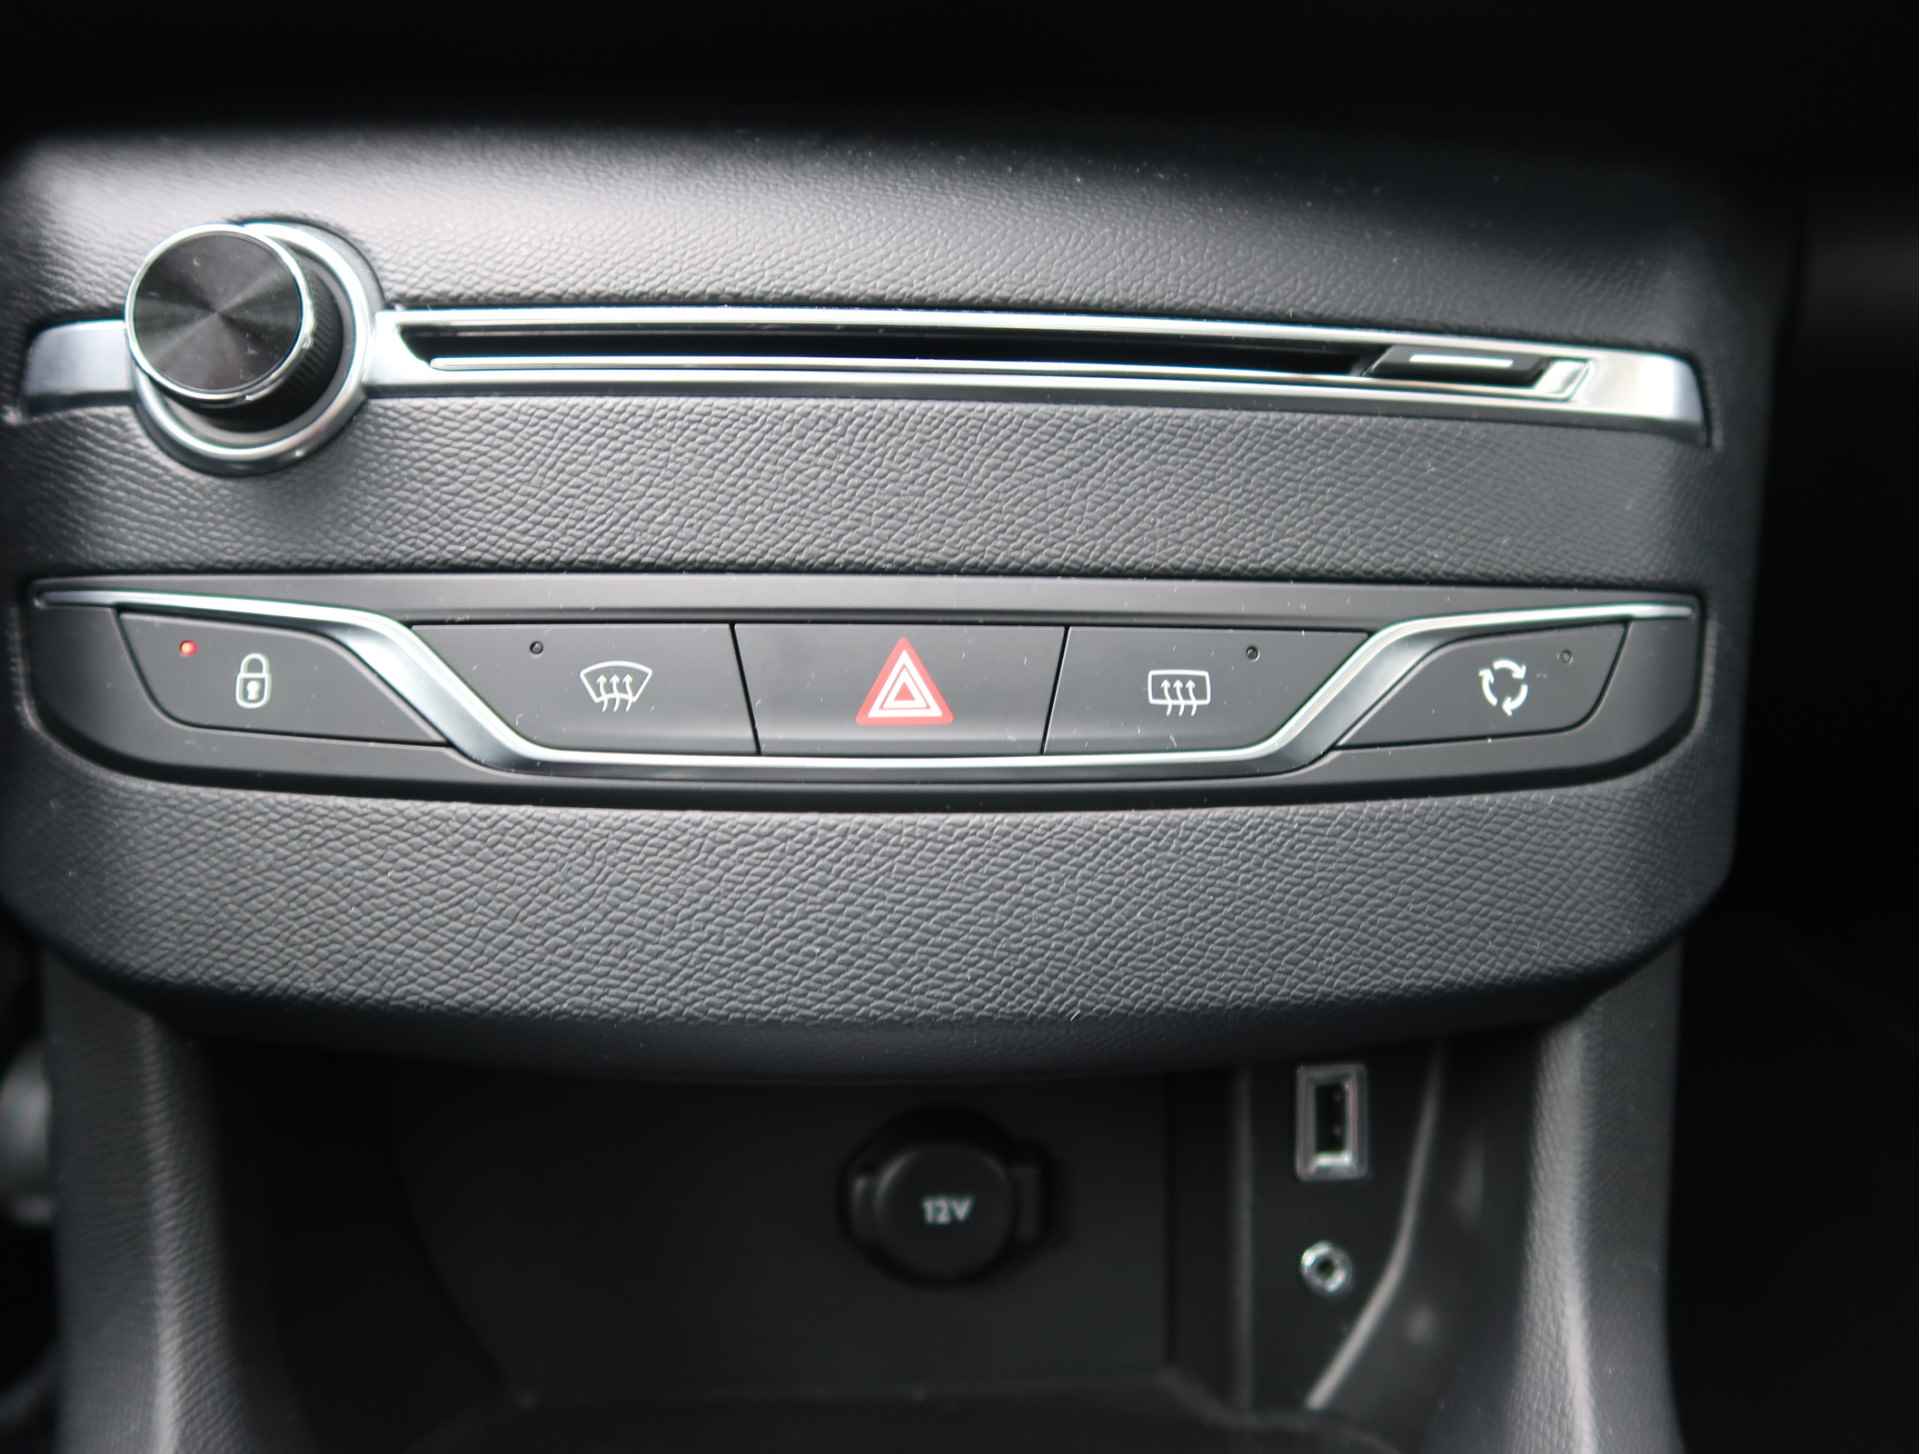 Peugeot 308 SW 110 PK Benzine * Panoramadak * Navigatie * L.M. Velgen * DAB+ Radio + CD * Cruise & Climate Control * Voor en achter Parkeersensoren* Vierseizoenenbanden * - 28/45